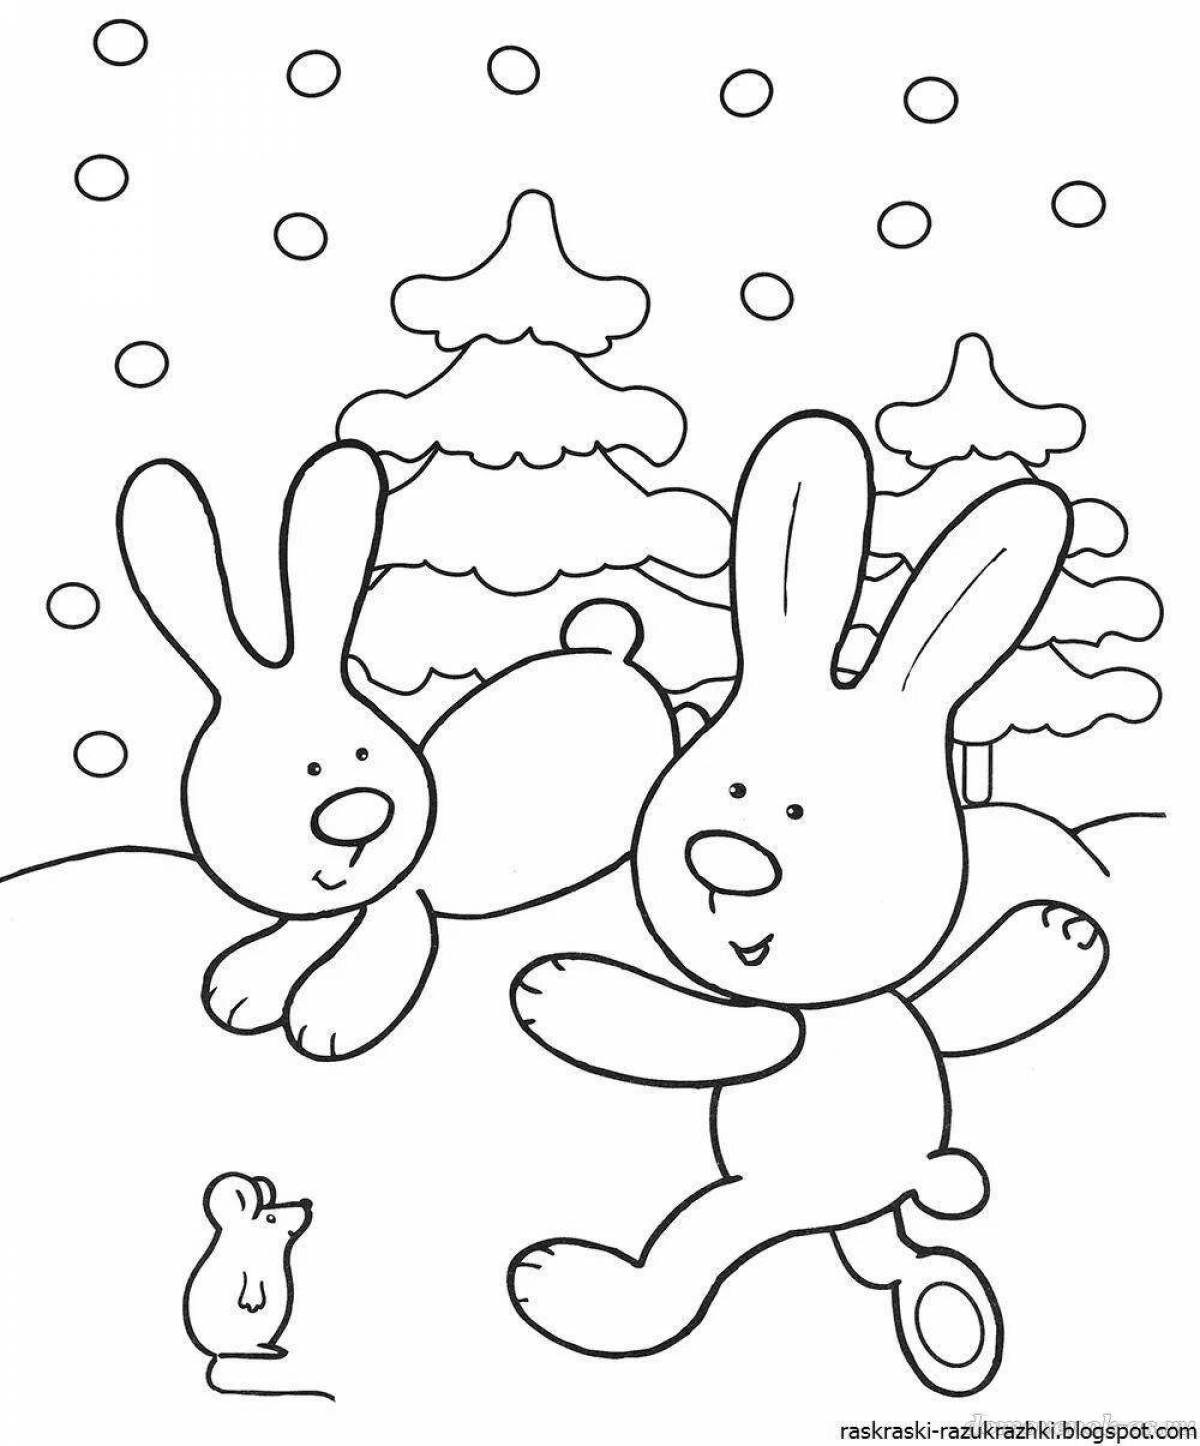 Раскраска лучистый заяц для детей 2-3 лет